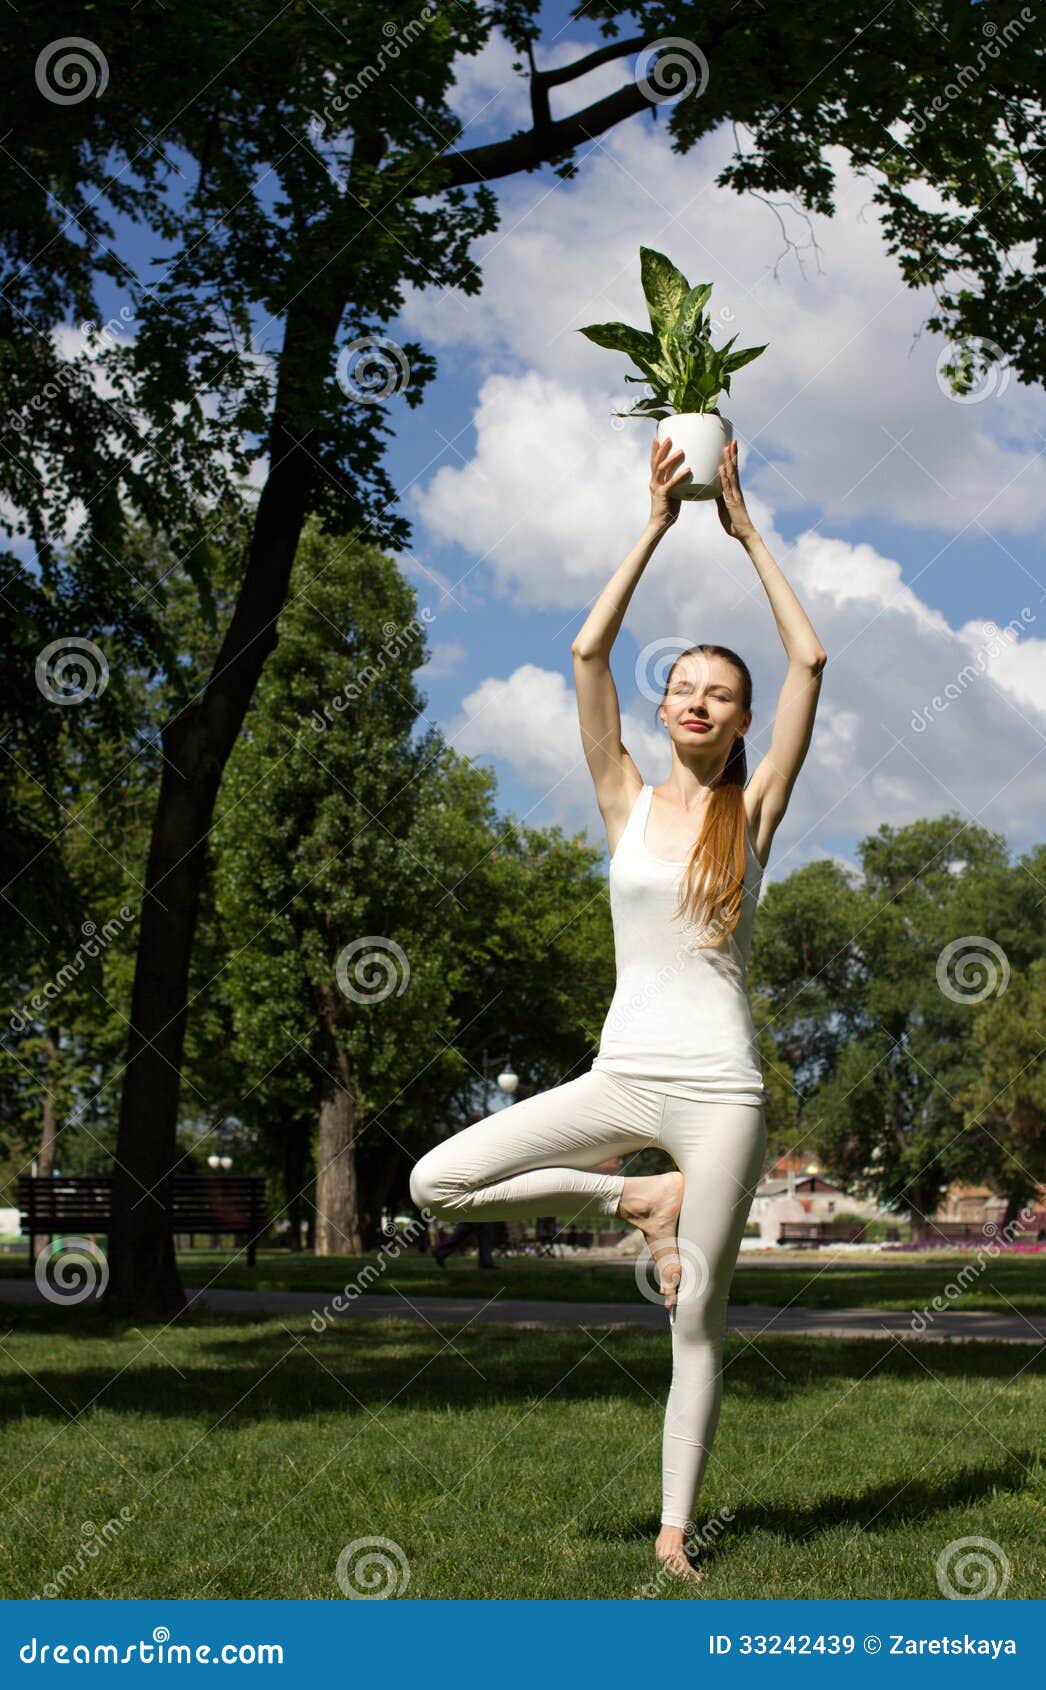 Yoga Pose: Standing Half Lotus | Pocket Yoga